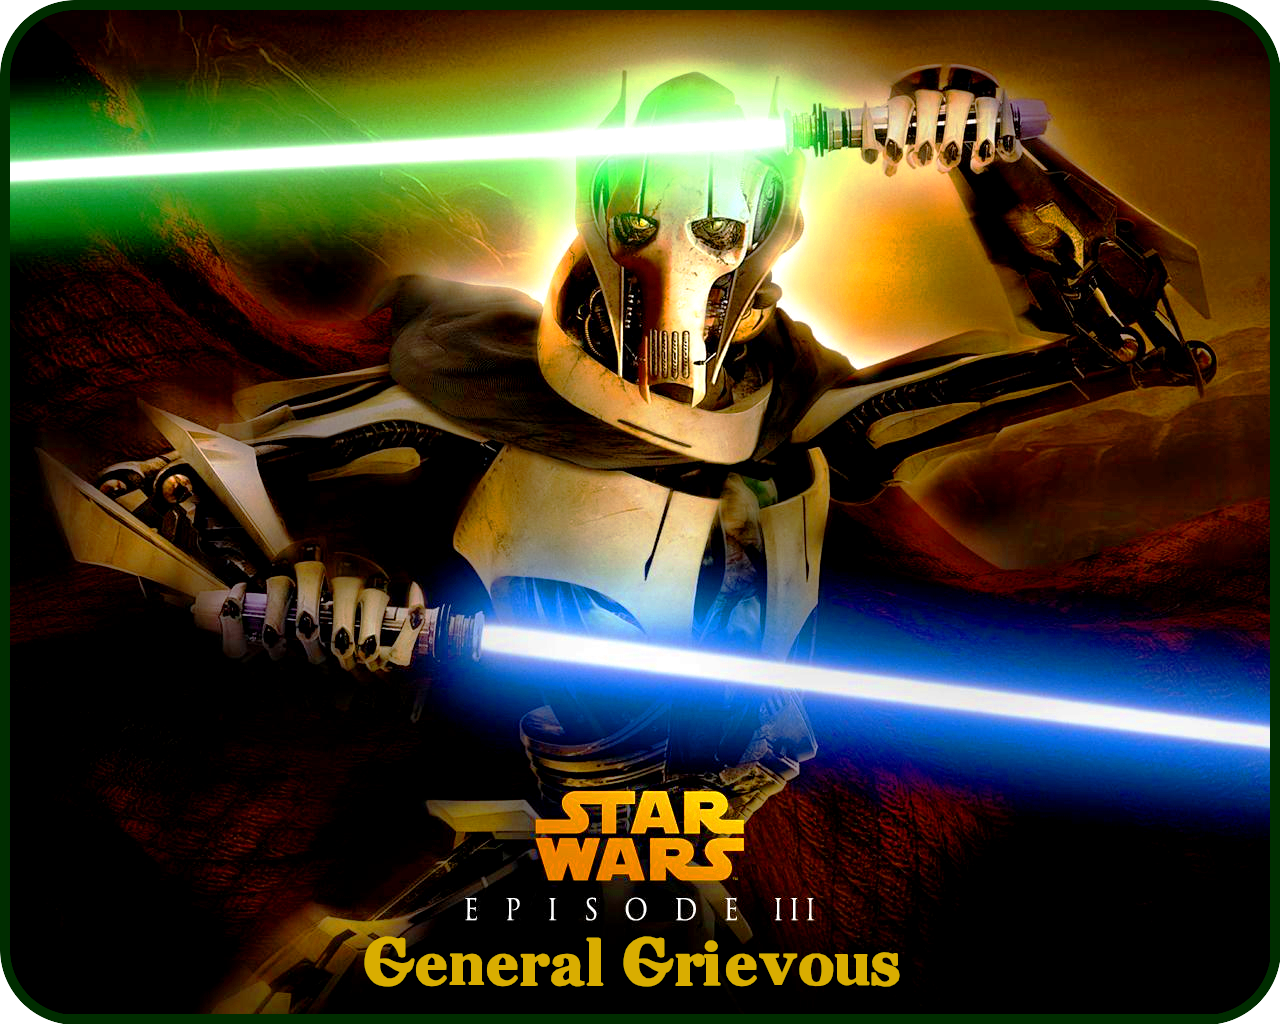 «Star Wars» Episode III «General Grievous» 